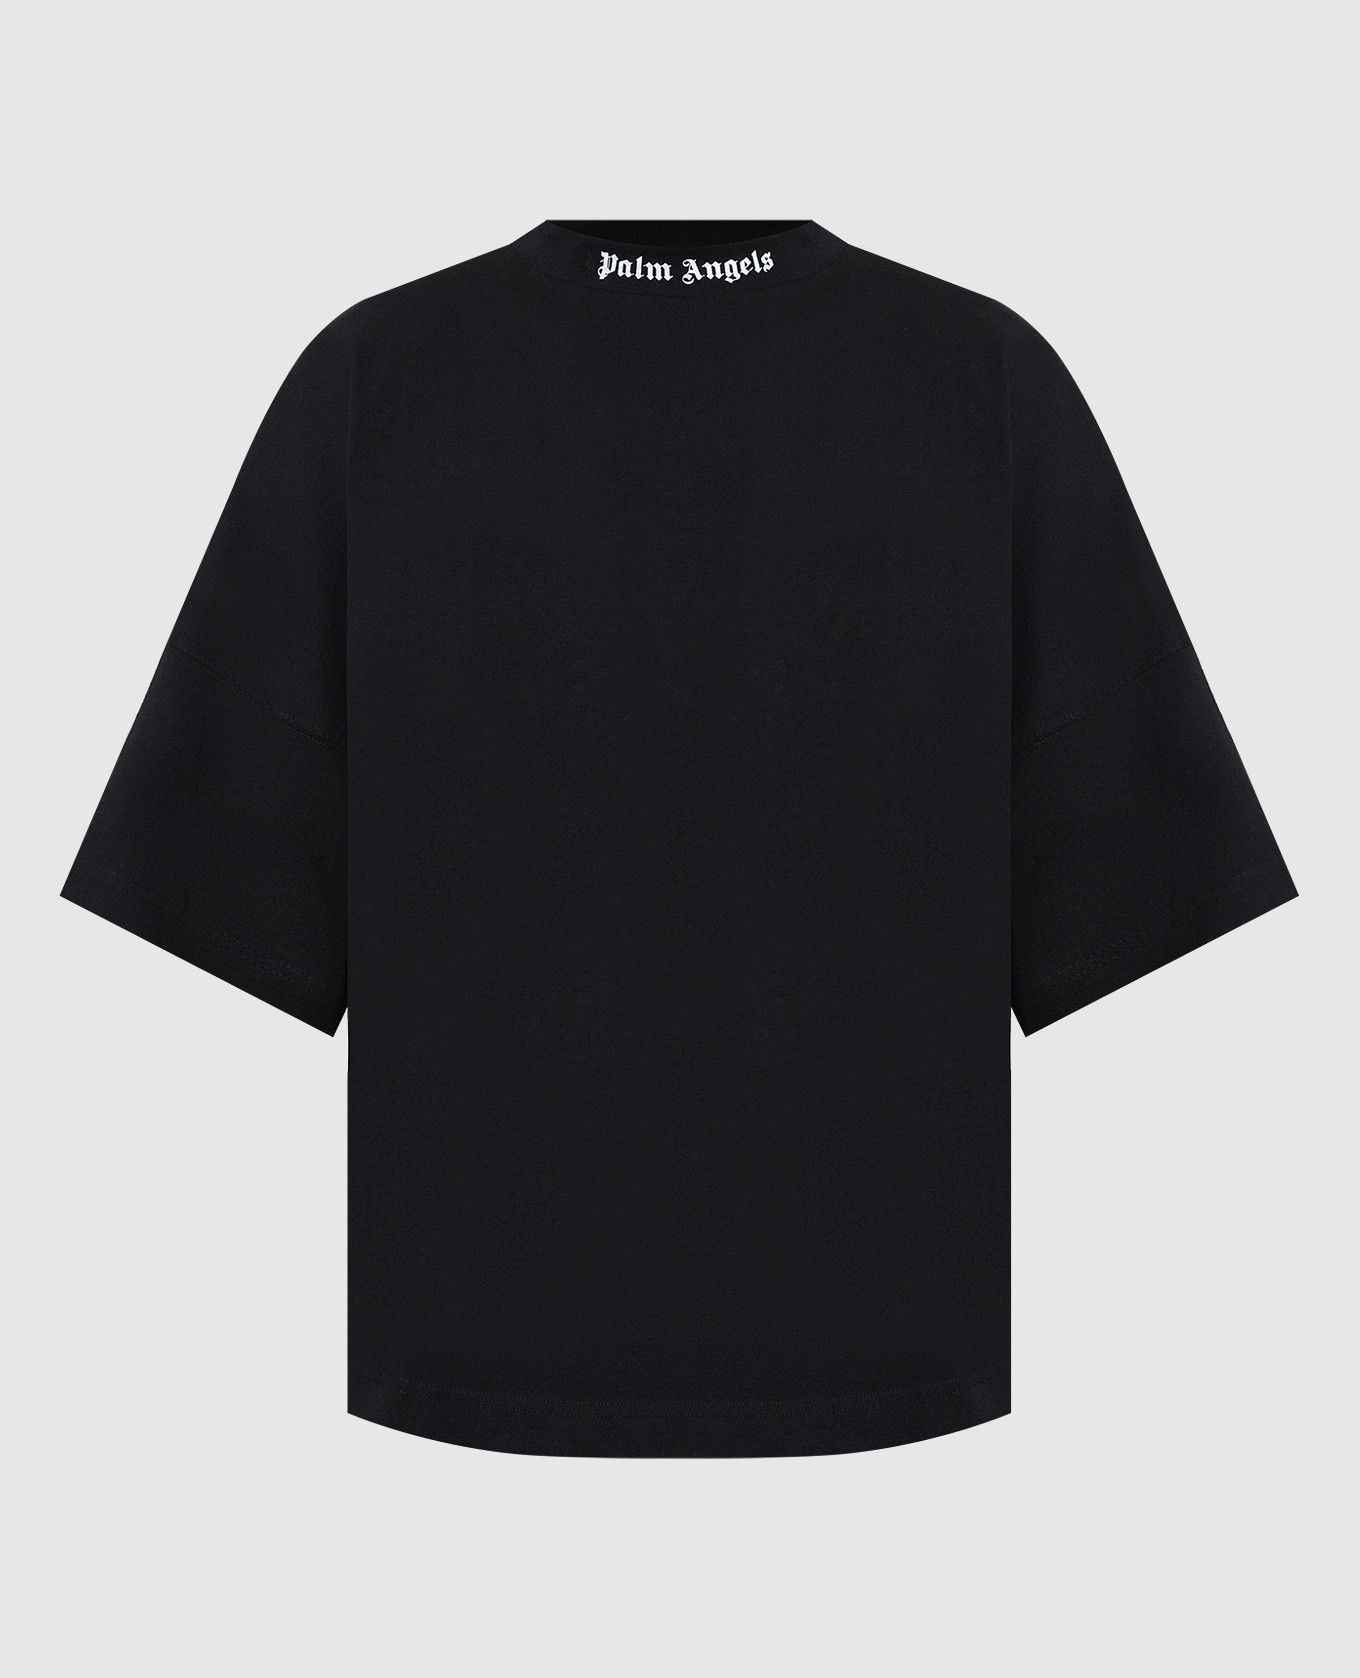 Черная футболка с фактурным принтом логотипа